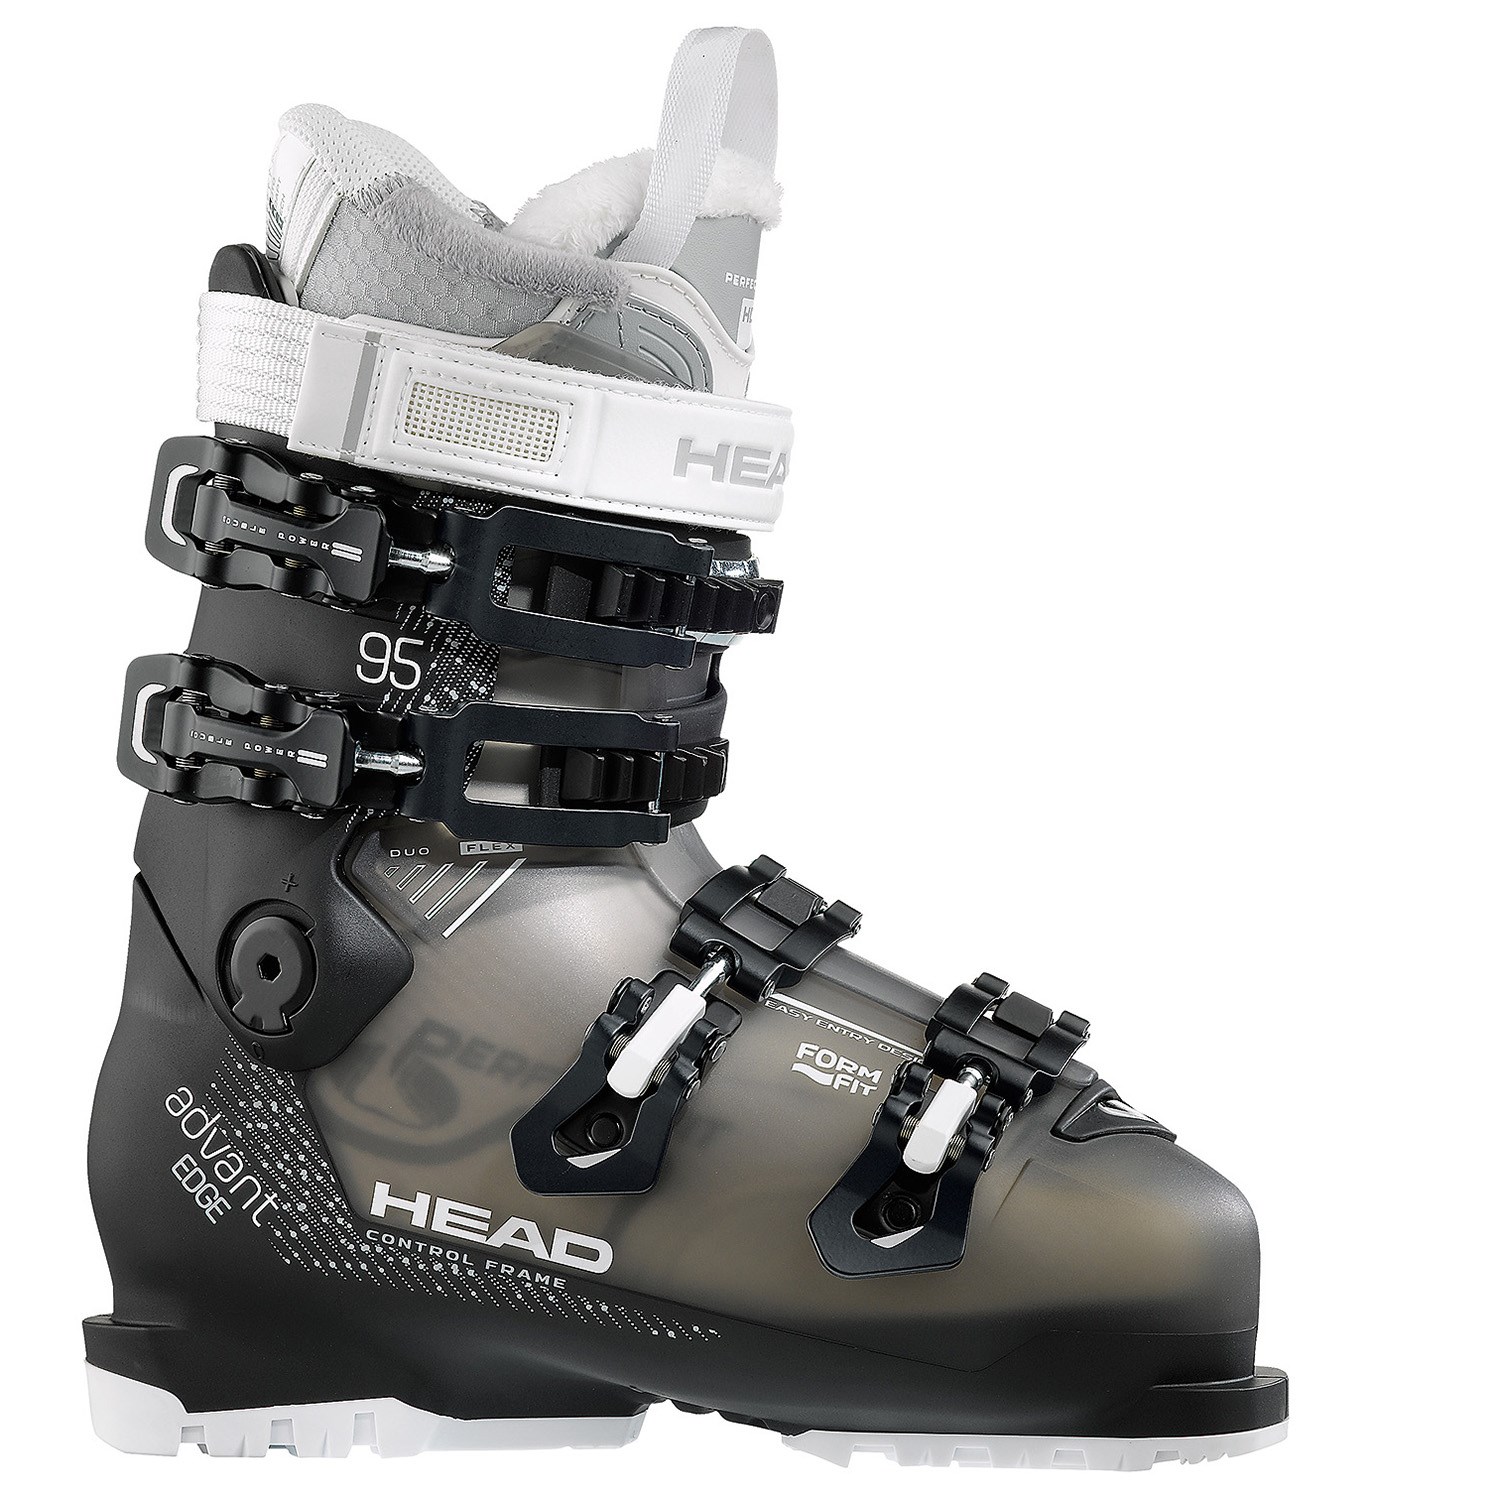 Head Advant Edge 95 W Ski Boots - Women's 2019 | evo